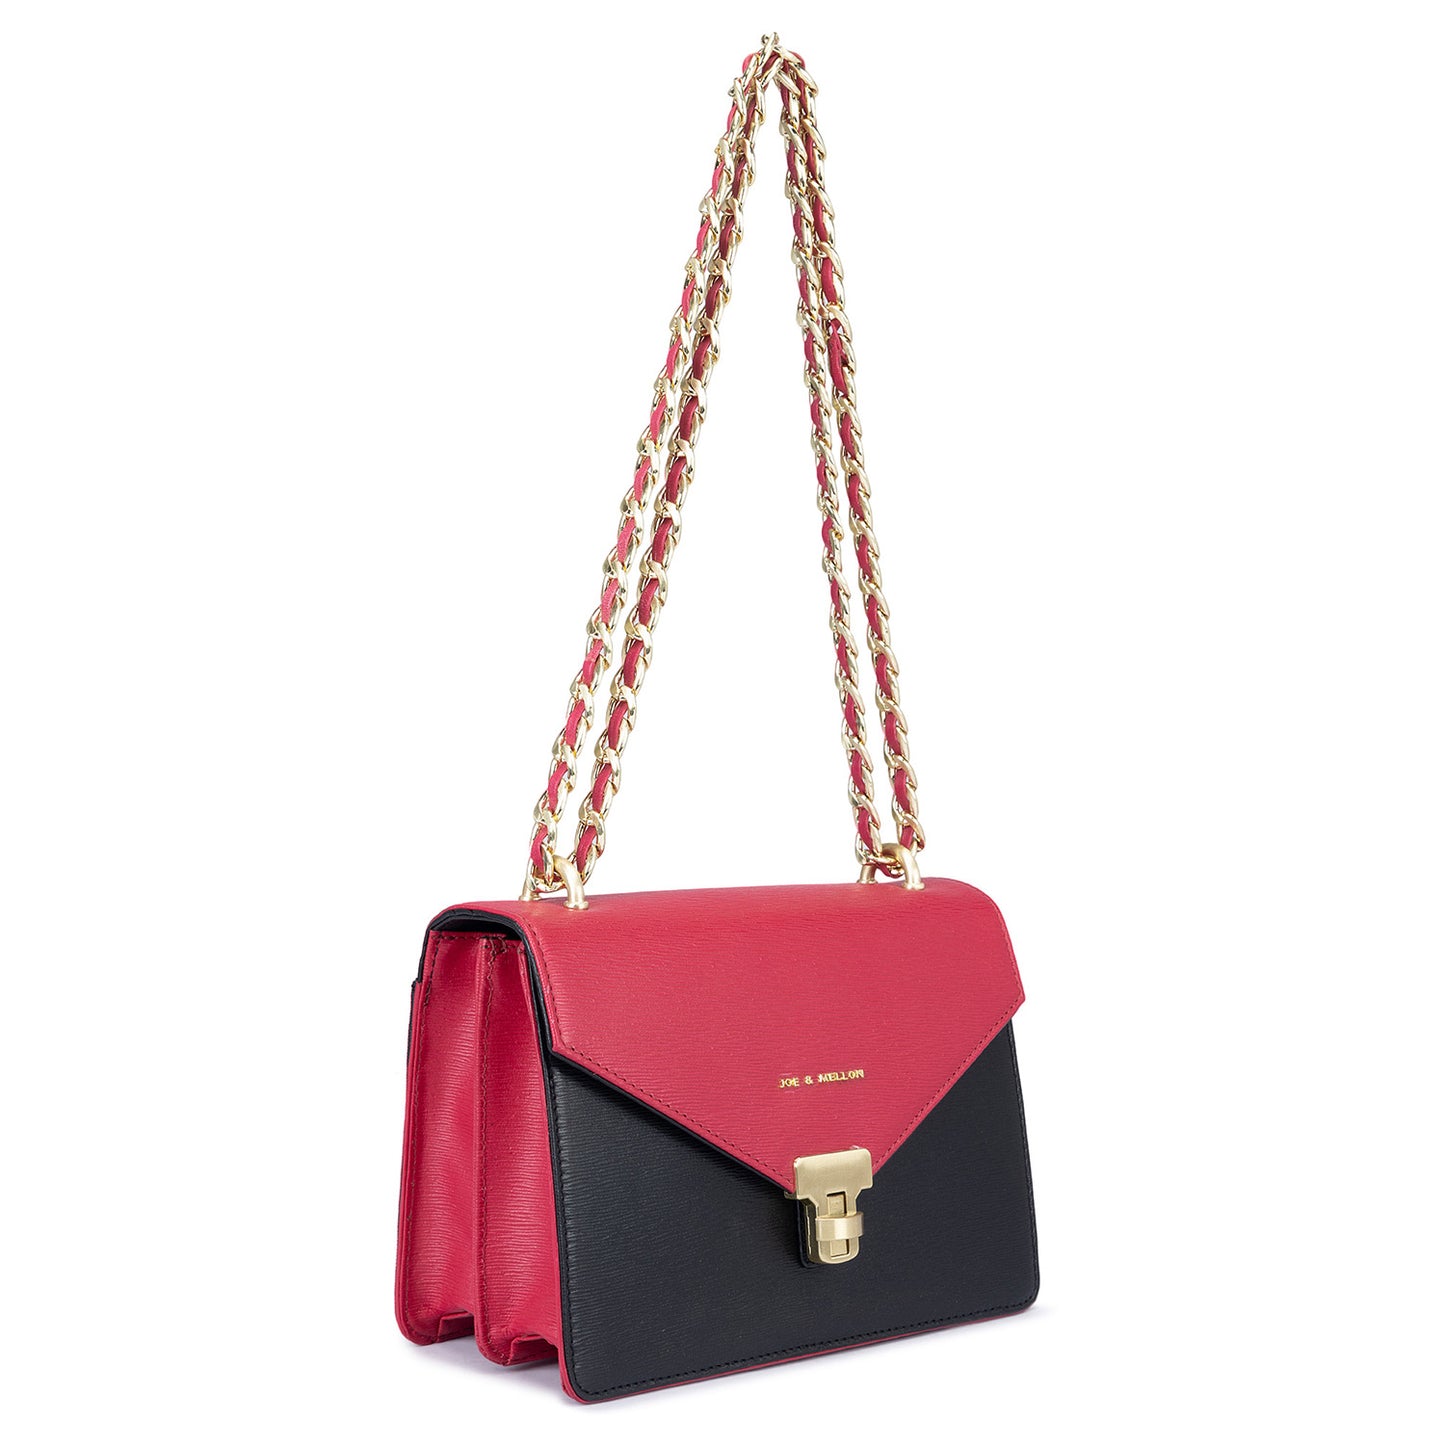 Grace Sling Bag - Pink & Black